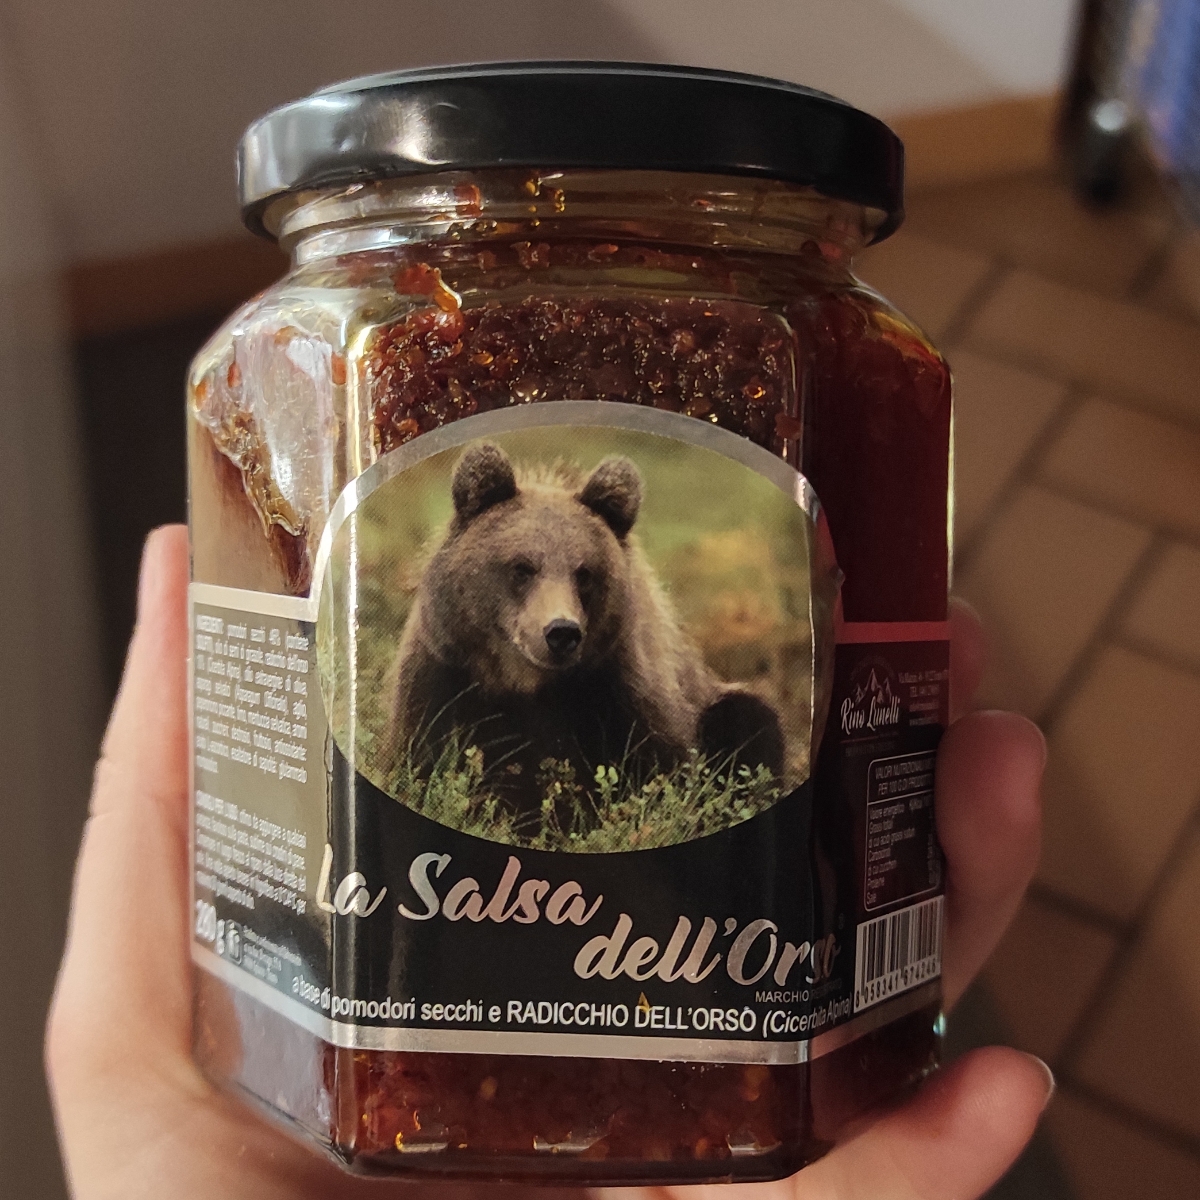 Lunelli Salsa Dell'Orso Review | abillion